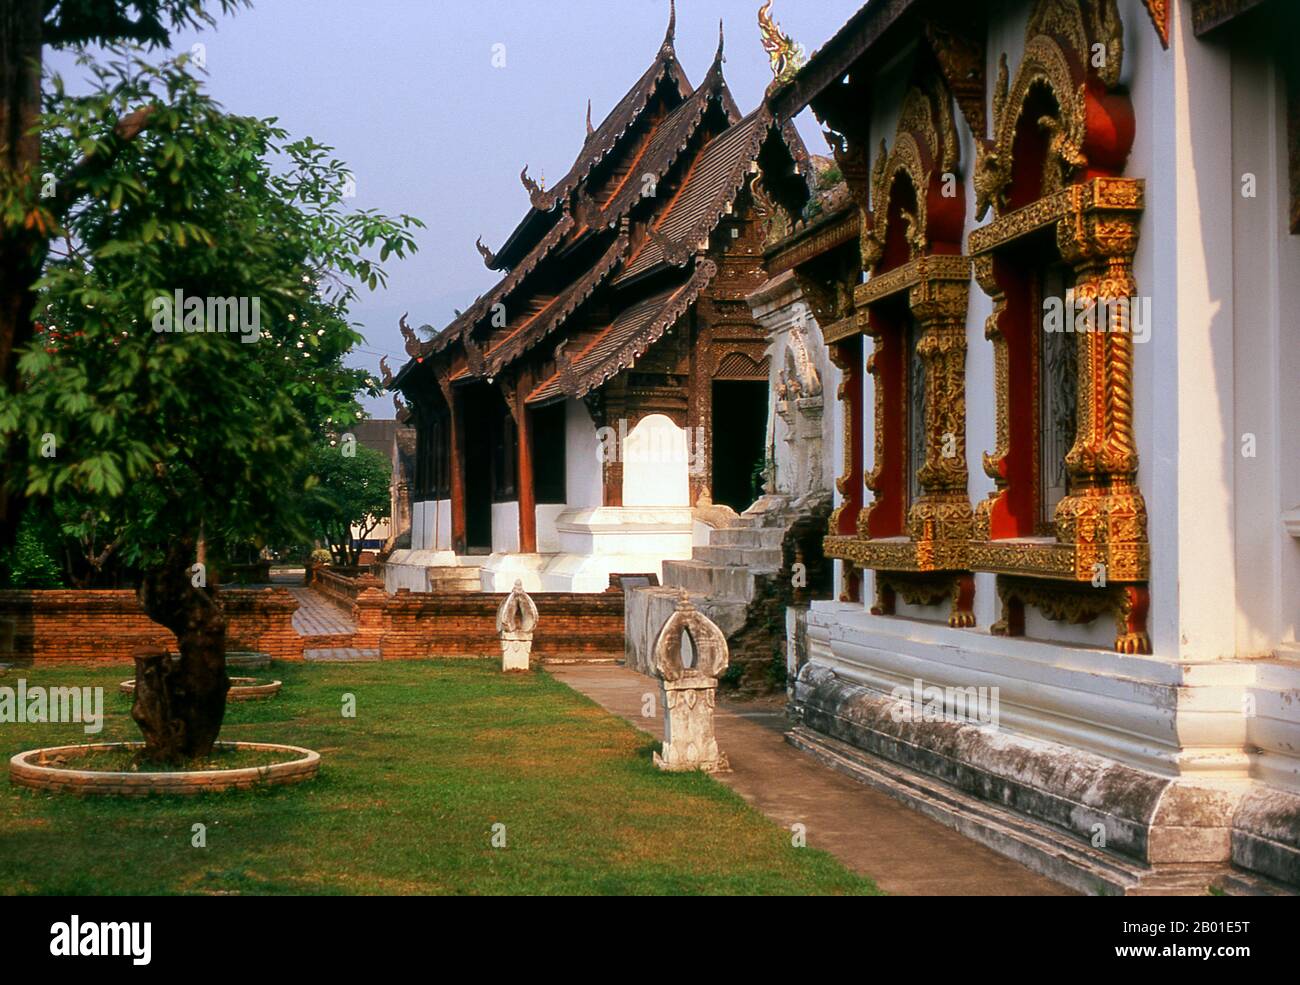 Thailandia: Ubosot (sala di ordinazione) in primo piano con il viharn sullo sfondo, Wat Prasat, Chiang mai. Wat Prasat (วัดปราสาท) risale almeno al 16th° secolo, ed è probabilmente ancora più vecchio. L'edificio più importante del complesso del tempio è l'antico viharn, che risale al 1823 ma è stato ristrutturato con gusto nel 1987. Costruito nel tradizionale e distintivo stile LAN Na, il viharn e' costruito con pannelli di legno di teak abilmente lavorati su una base di mattoni e stucco imbiancati. Foto Stock